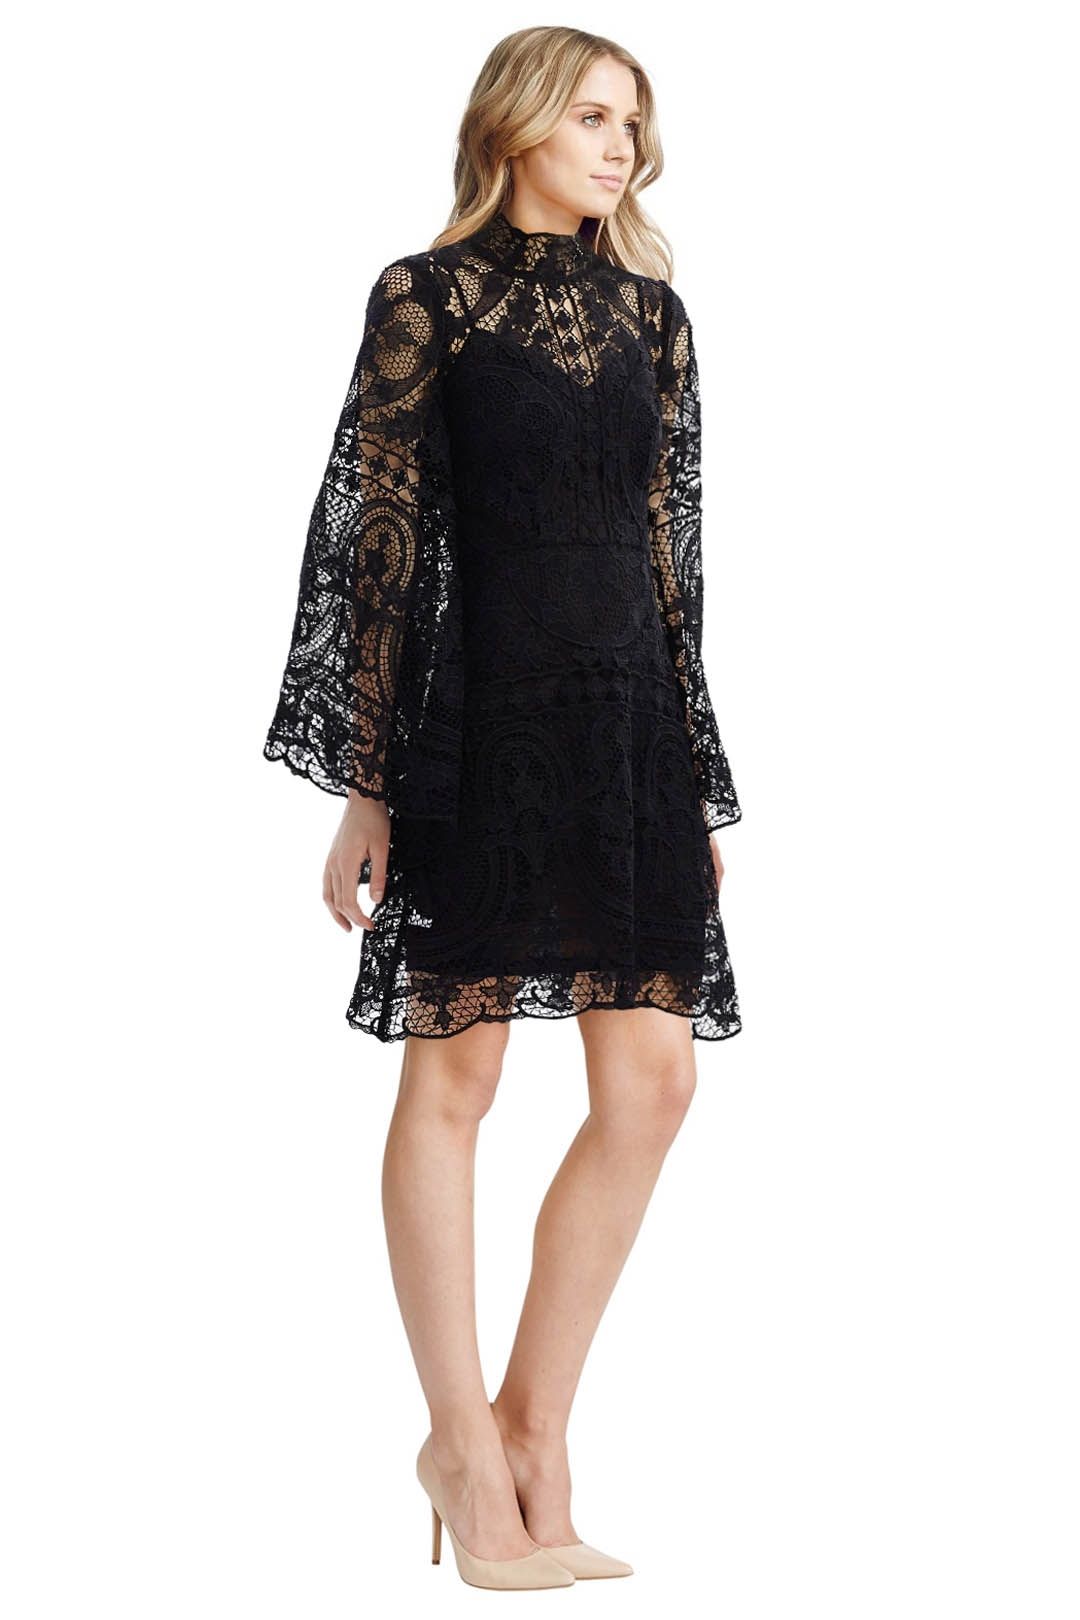 Thurley - Parisian Lace Dress - Black - Front